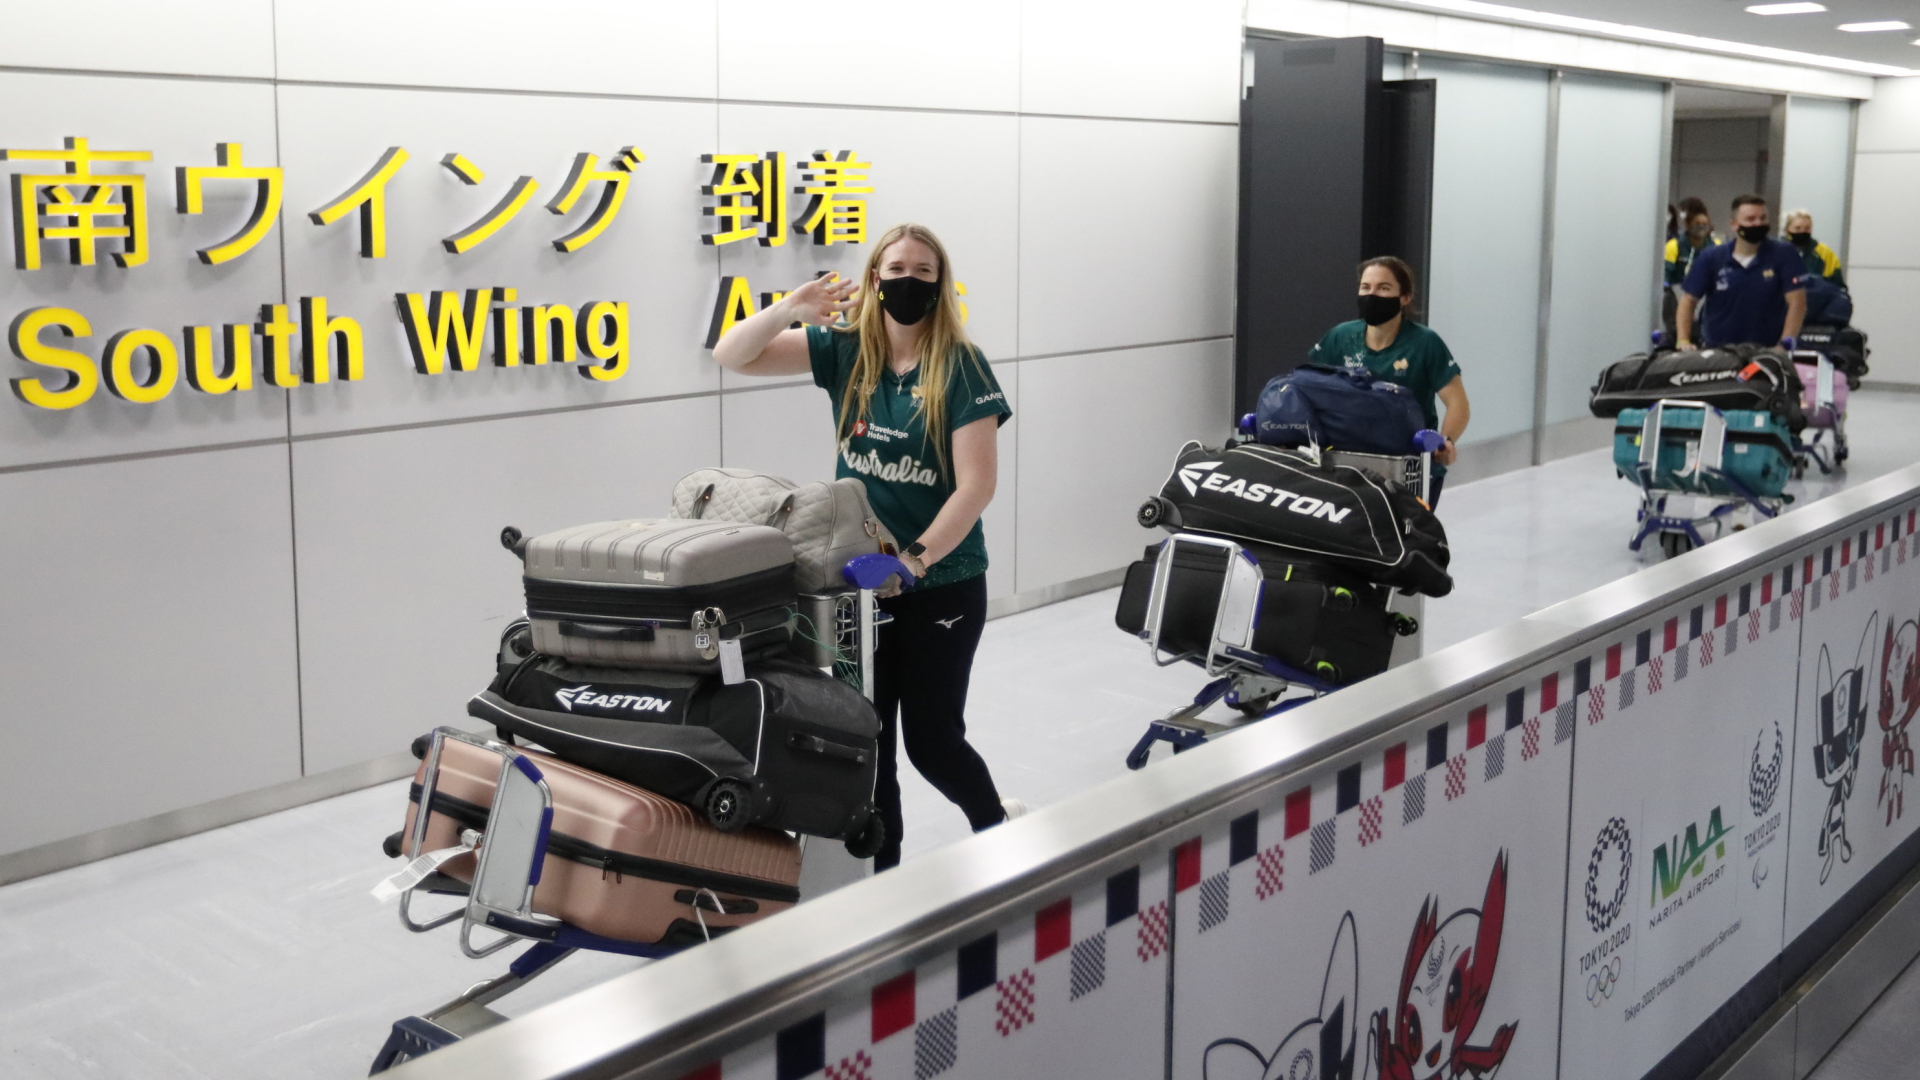 Mitglieder der australischen Softball-Mannschaft für die Olympischen Spiele kommen auf dem Flughafen Narita (Japan) an. | AP